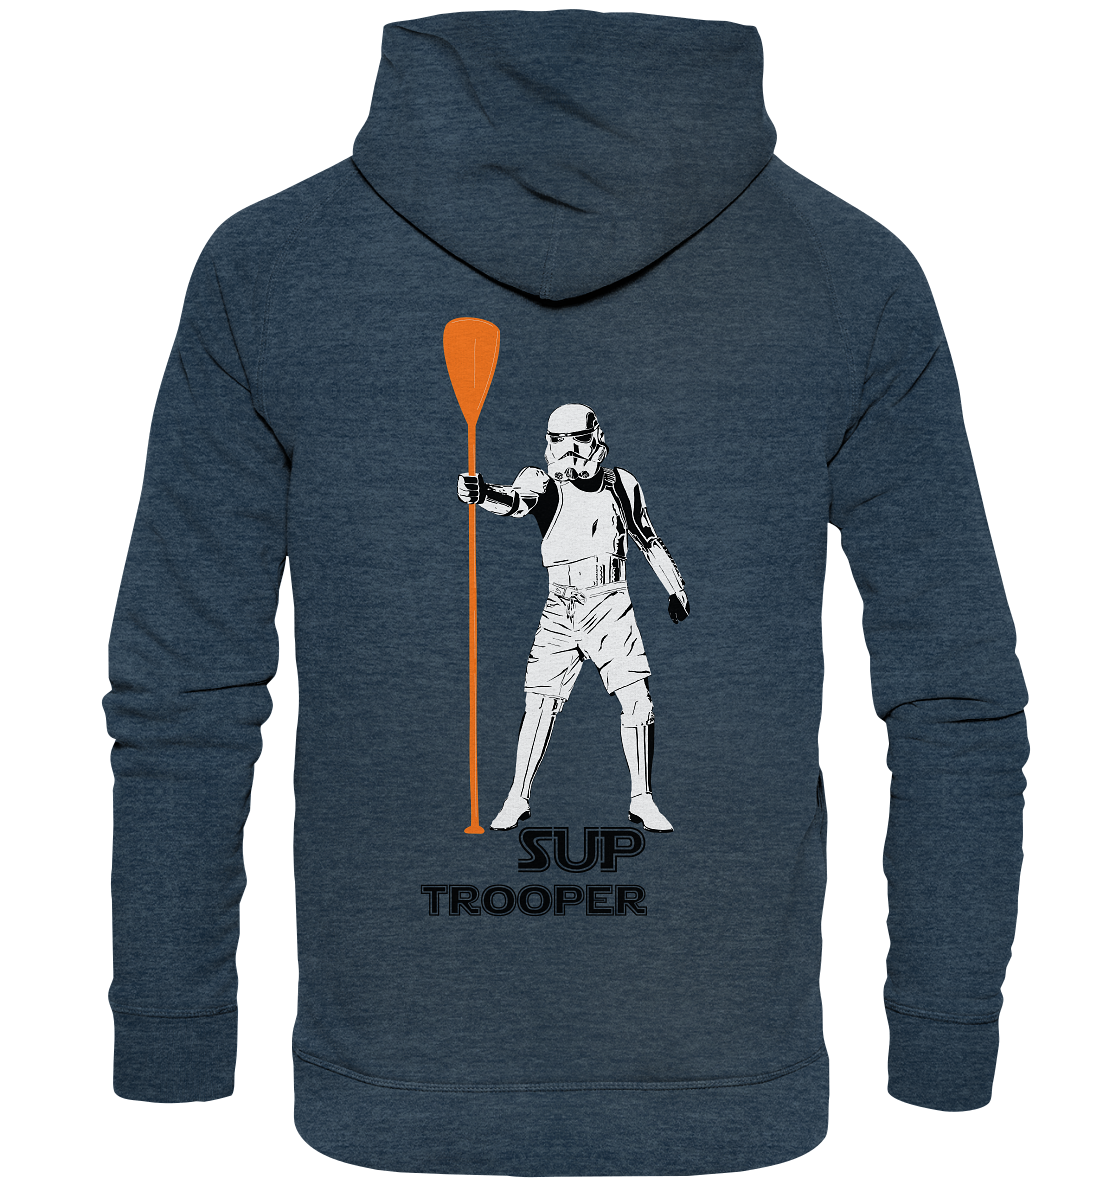 Trooper - SUP like a maschine